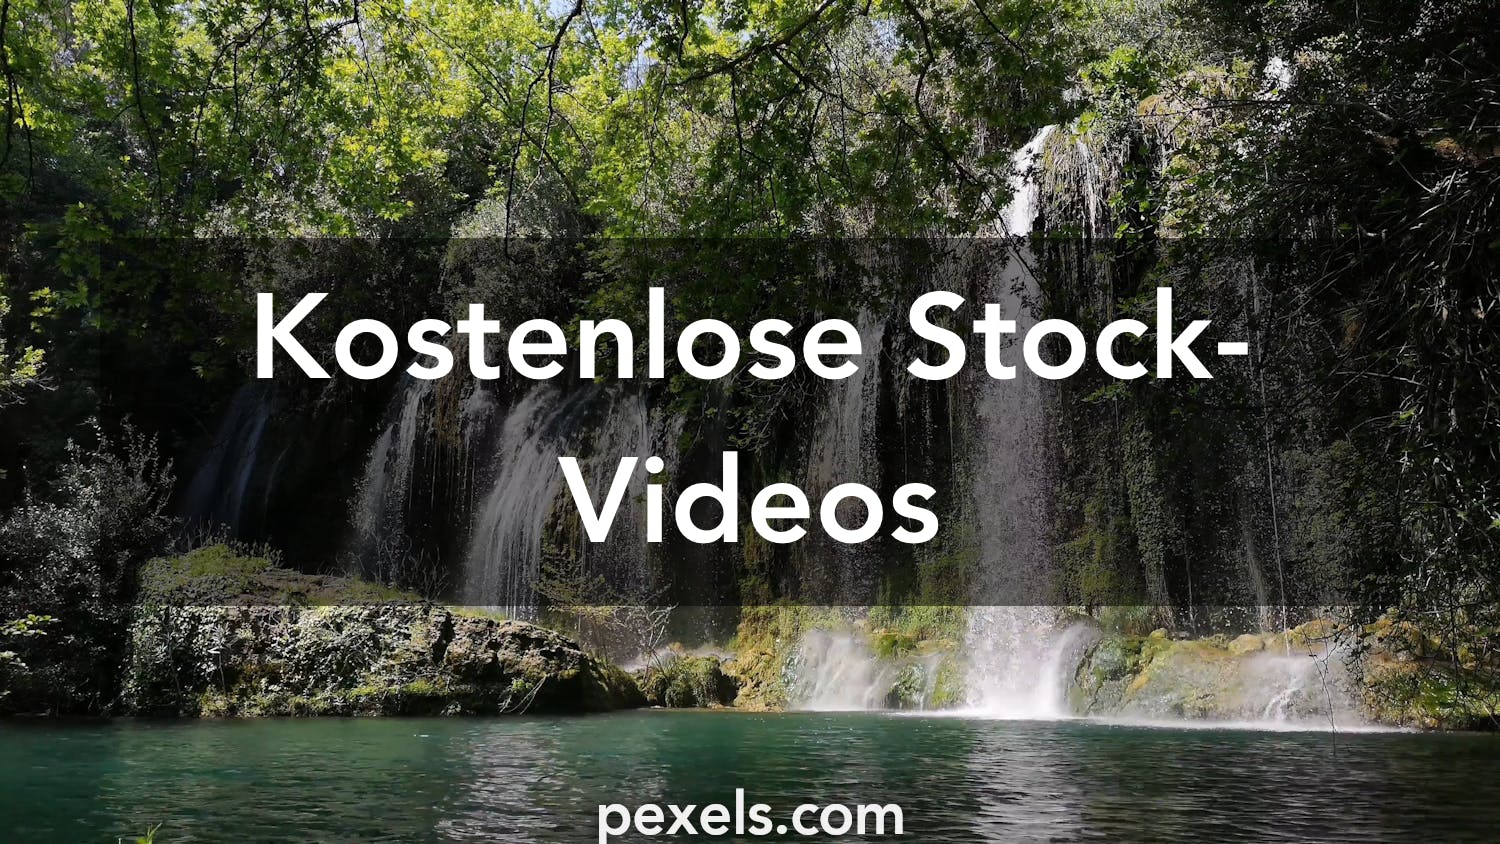 500 Videos Zu Wasserfall Pexels Kostenlose Stock Videos